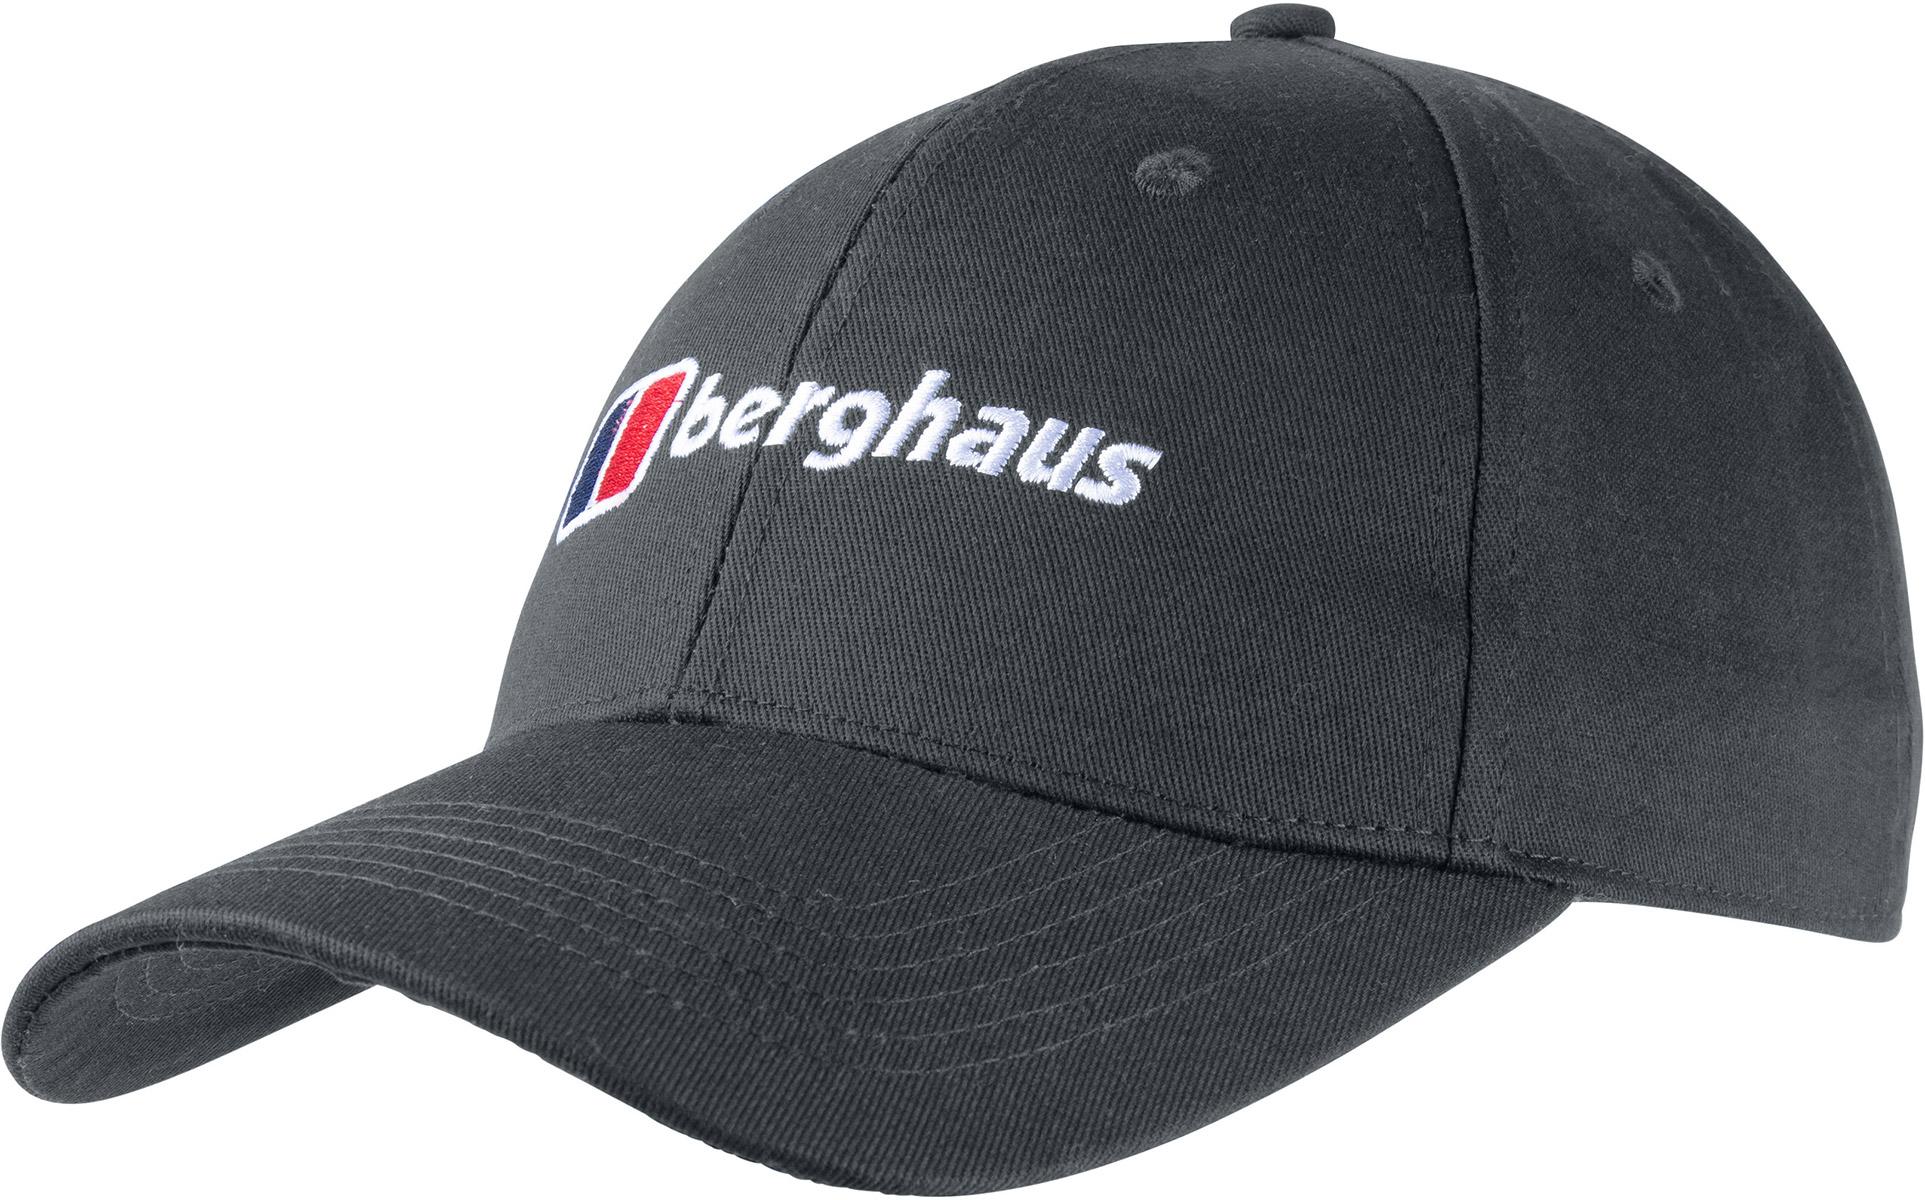 Berghaus Logo Recognition Cap - Grey Pinstripe